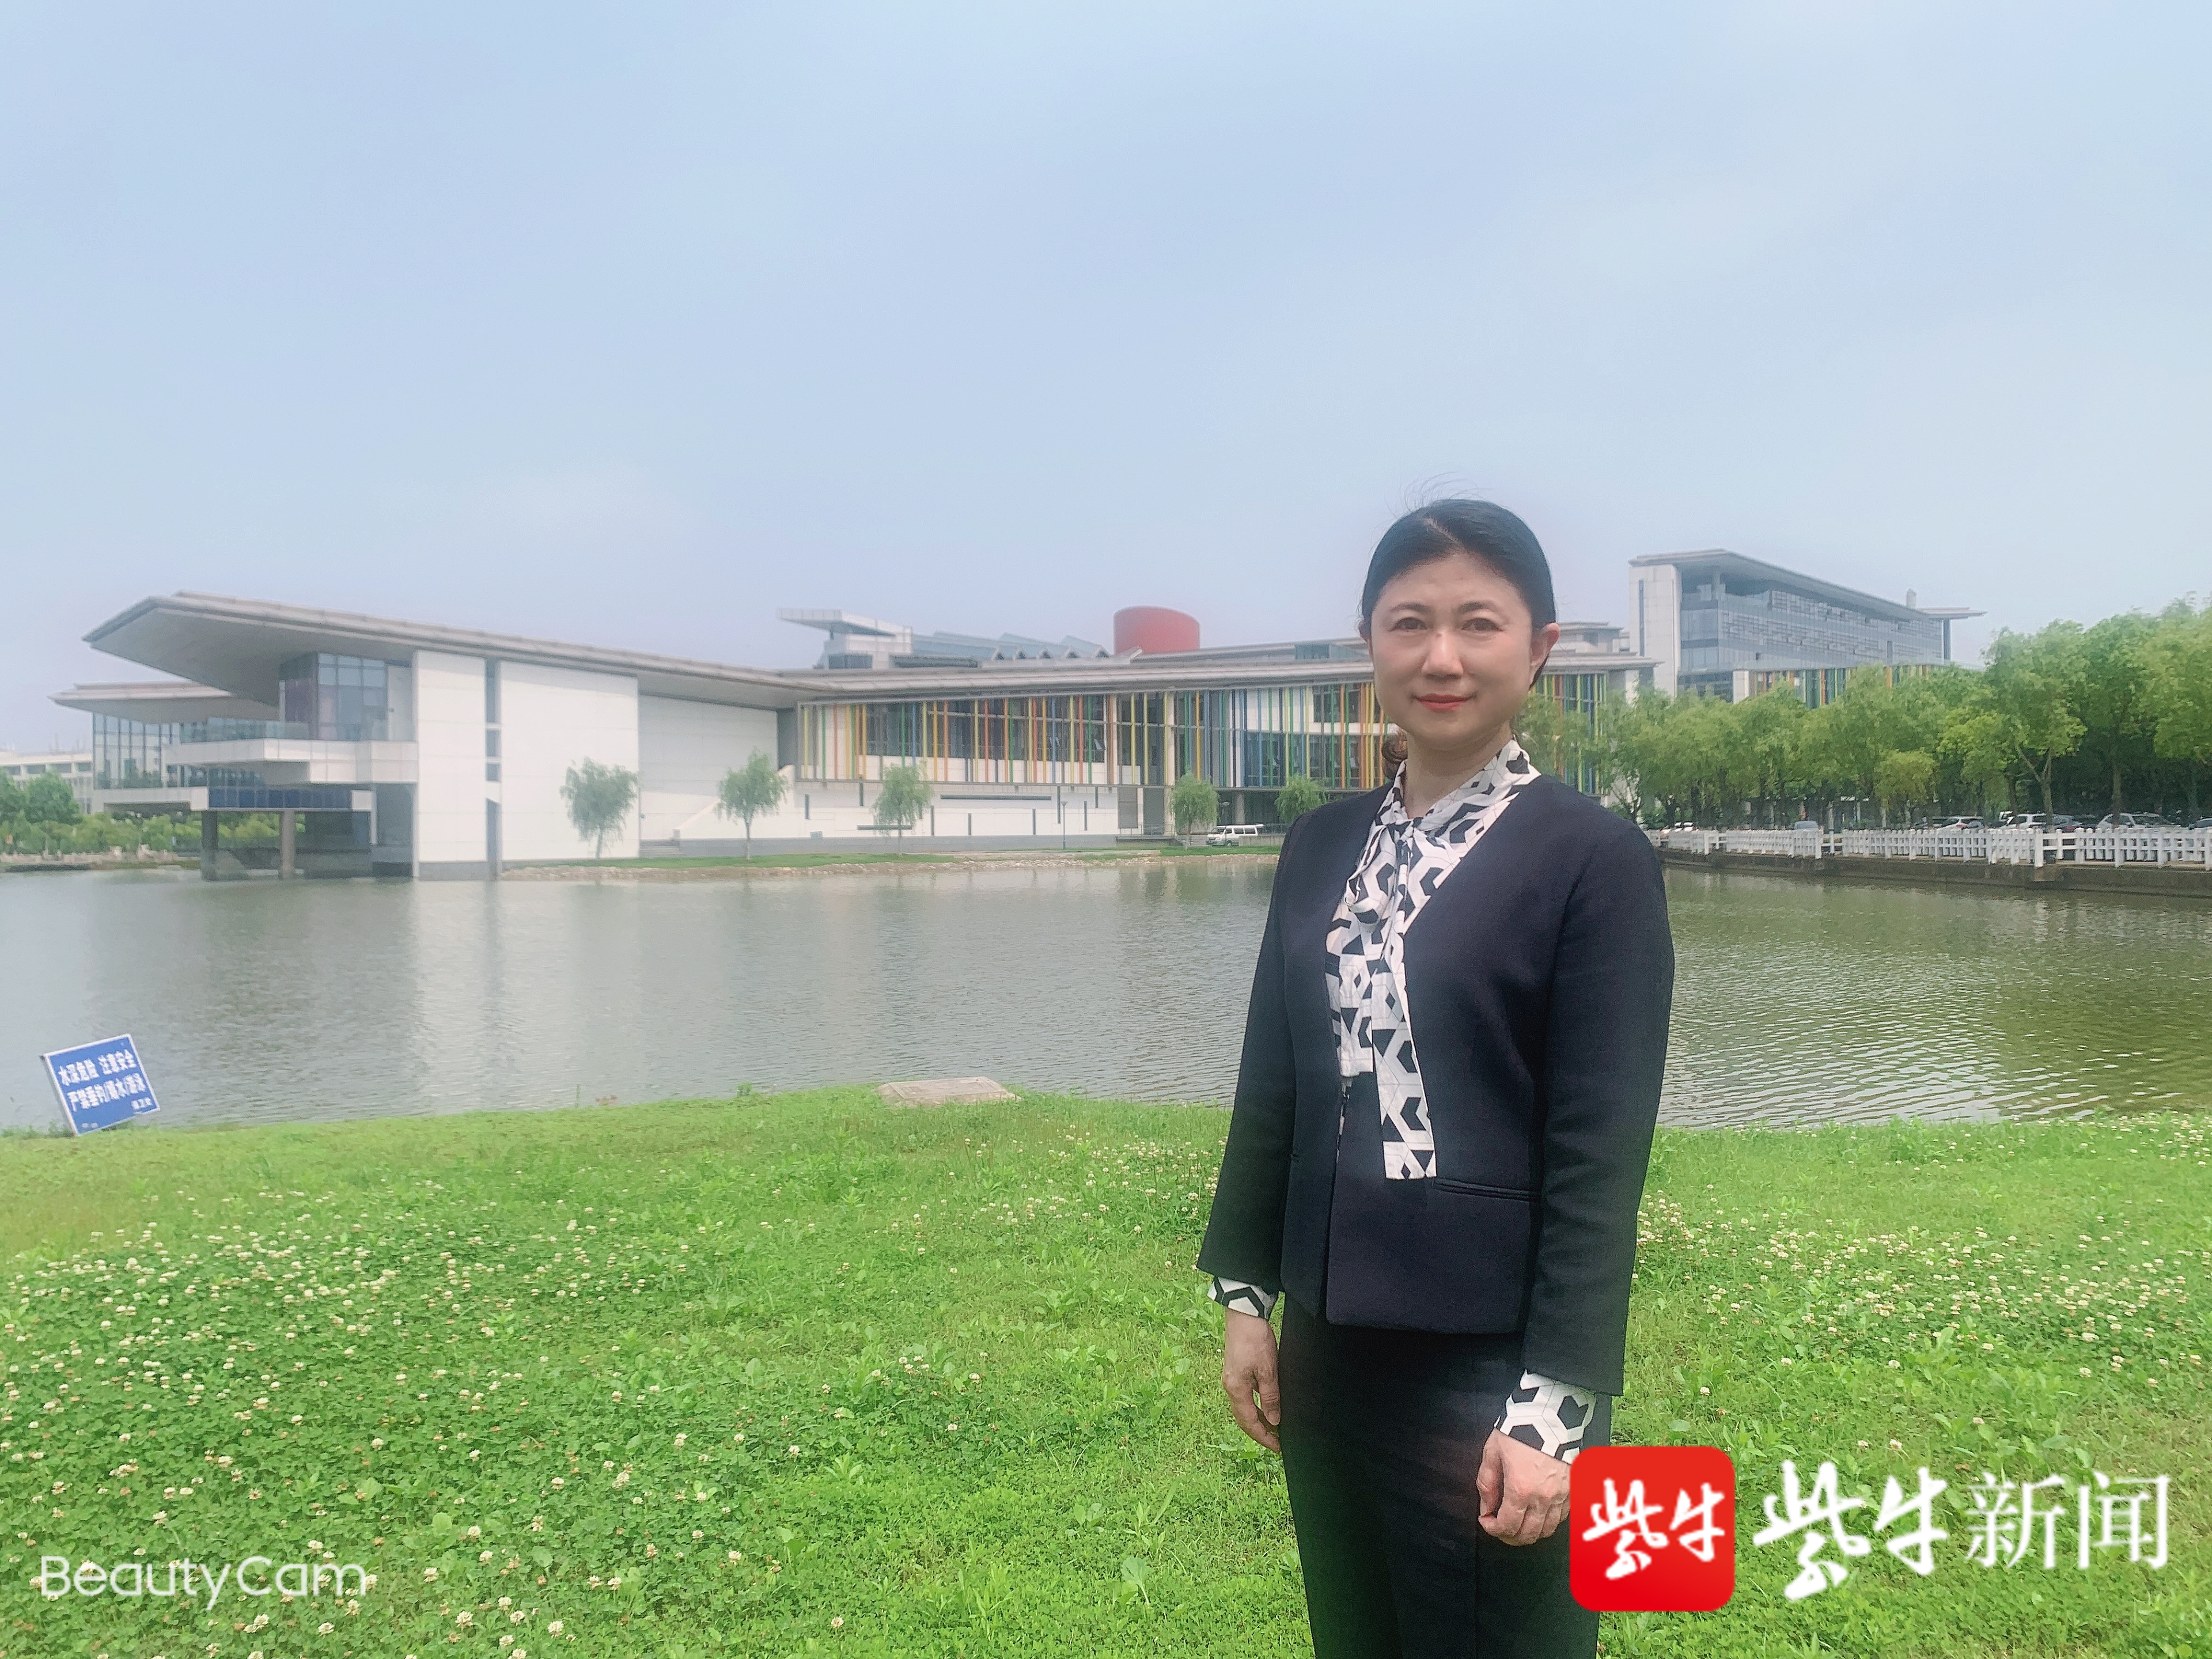 2021相约南医 丨 令人心动的南京医科大学来了!